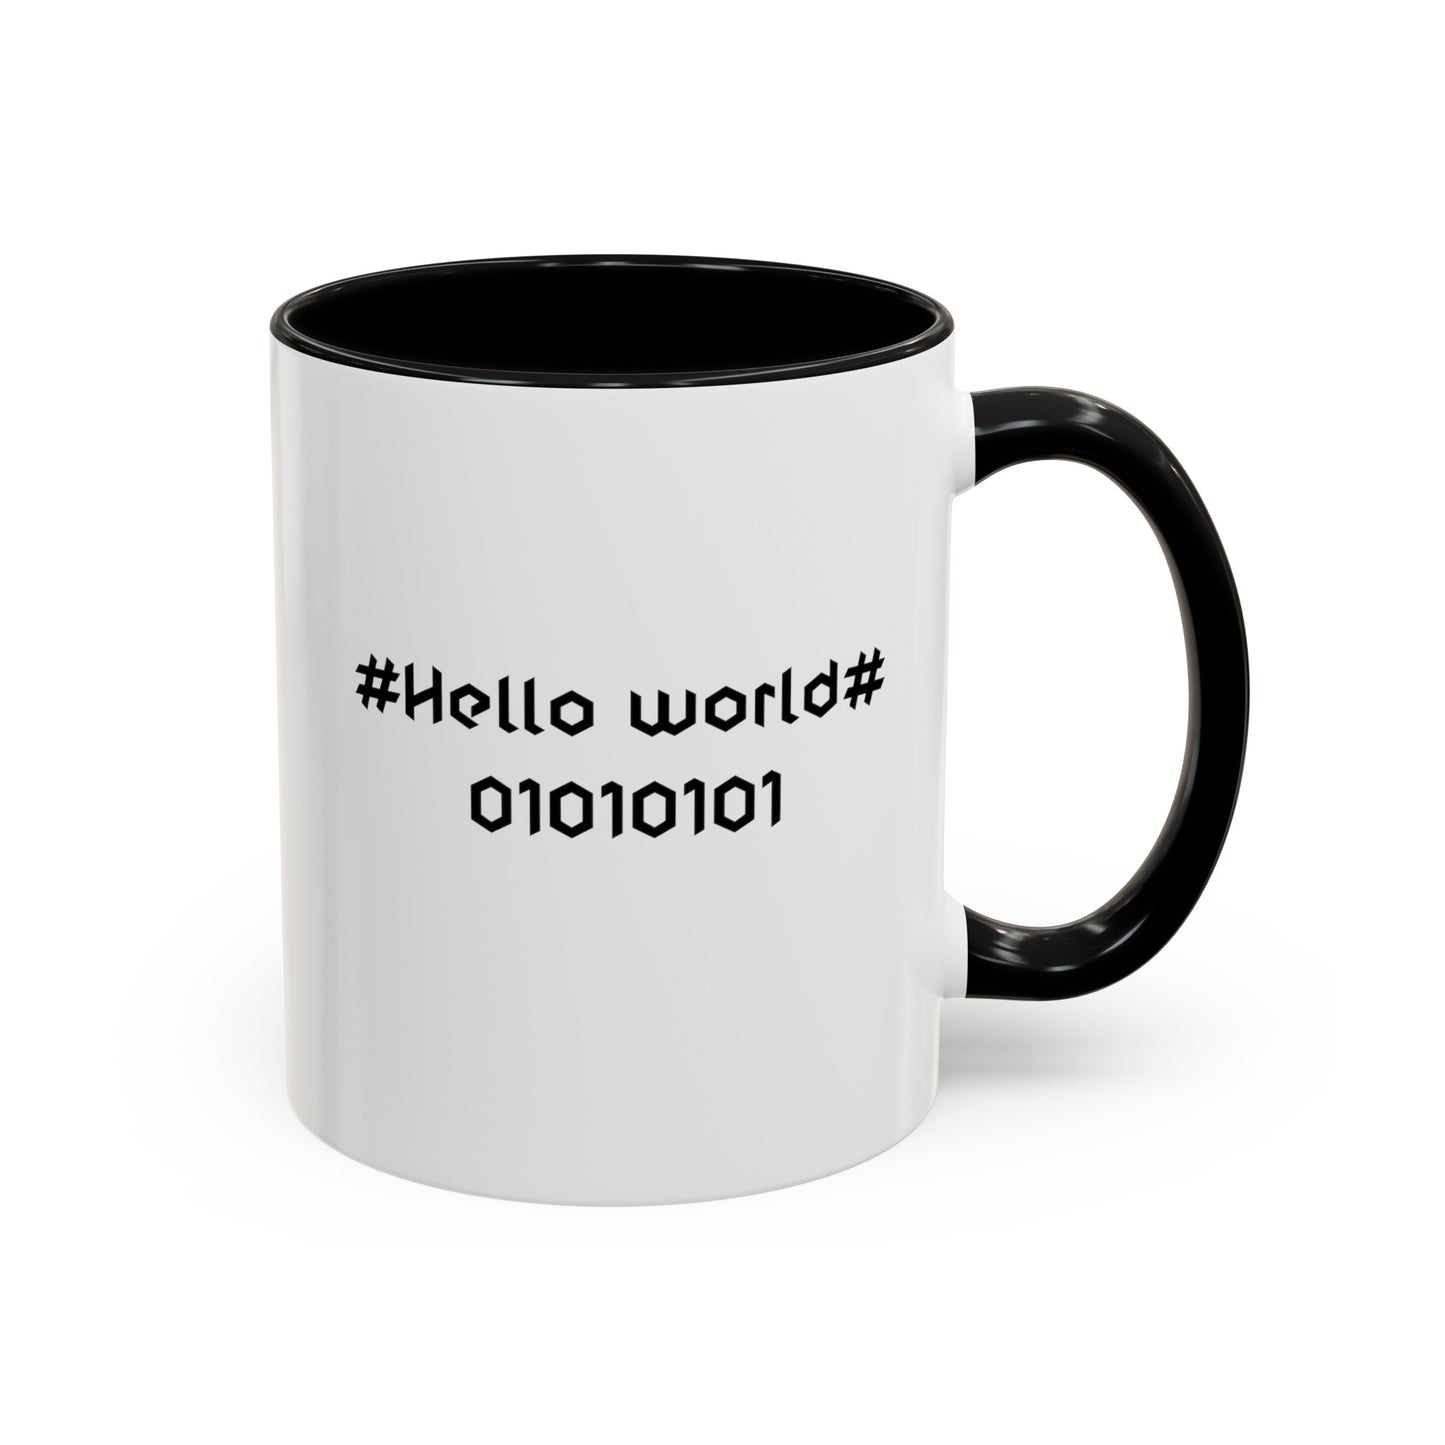 Programmer Coffee Mug, Hello world mug, two toned mug